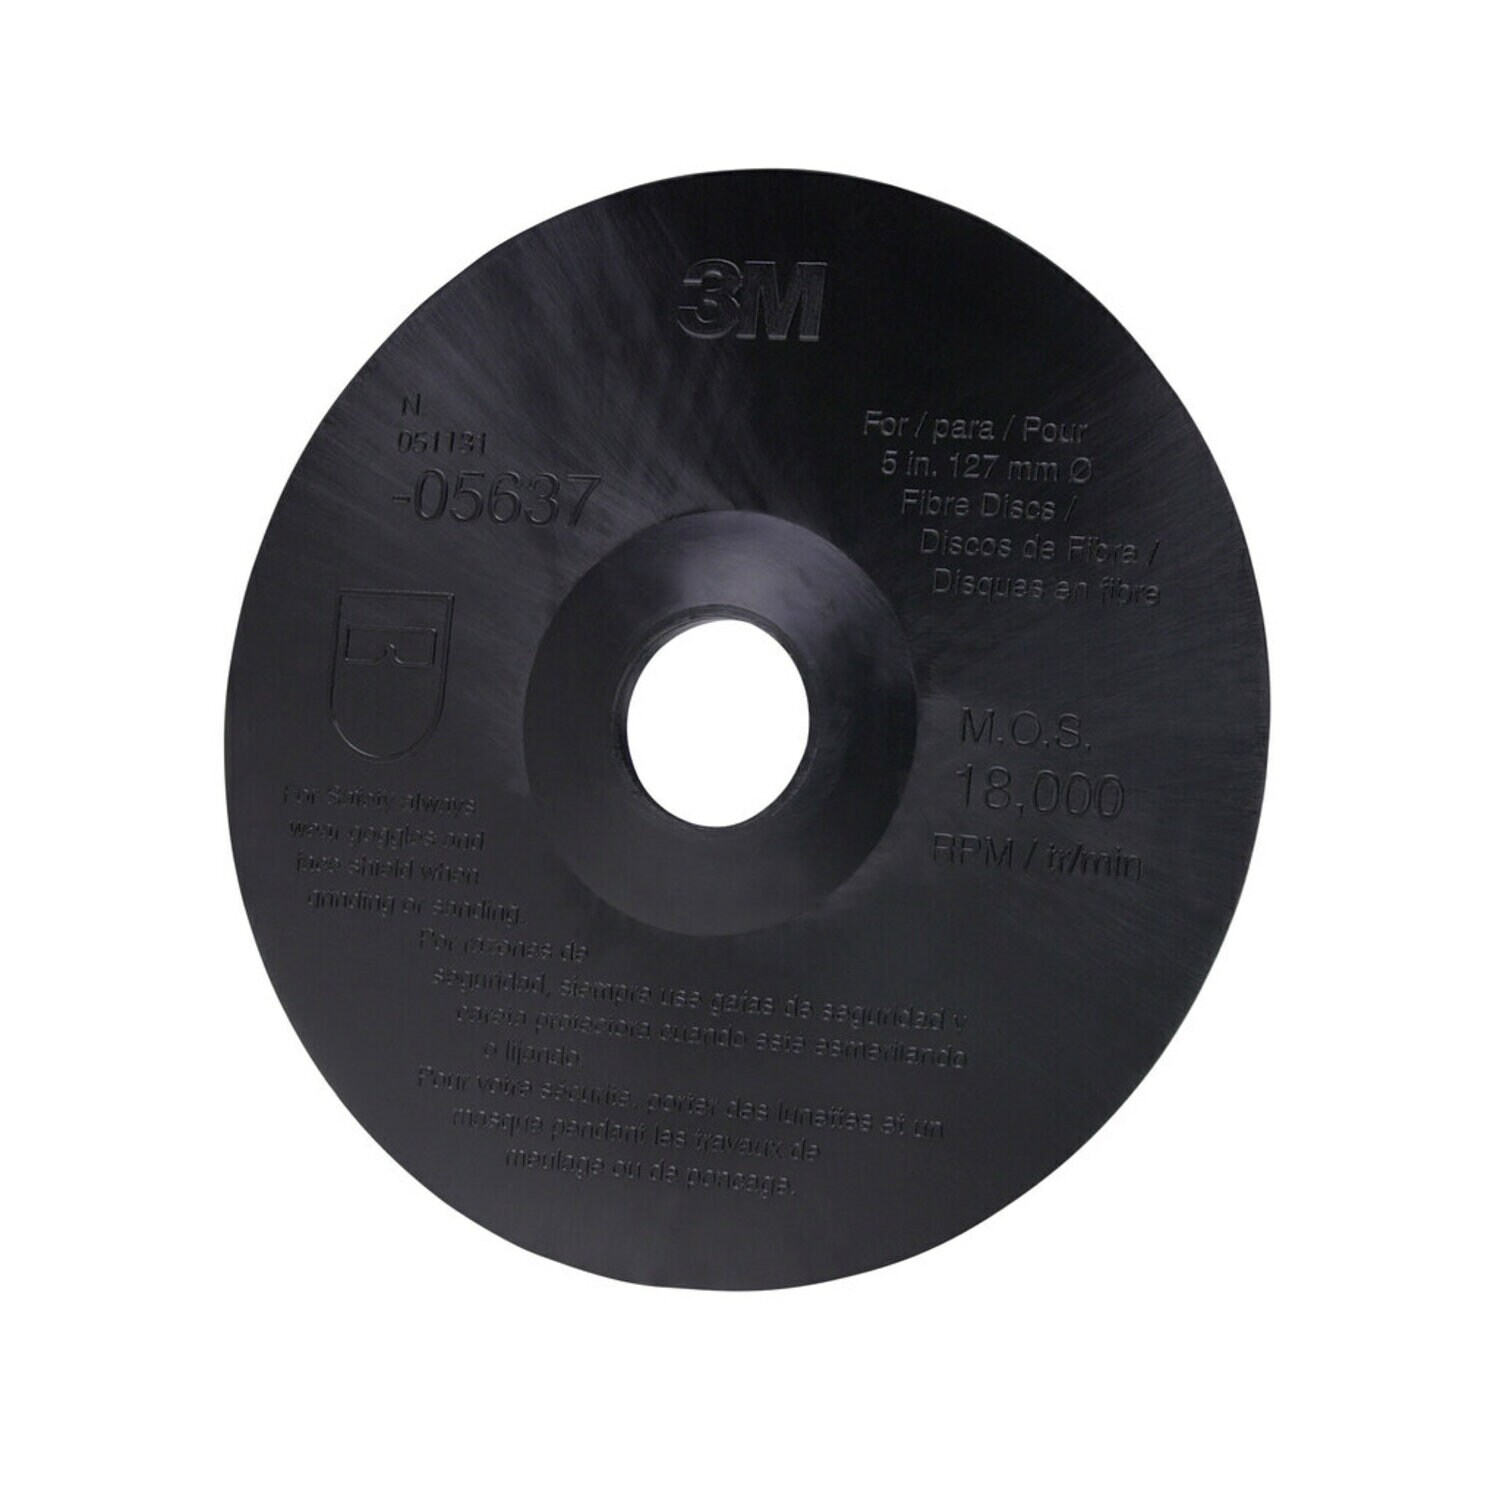 7000120462 - 3M Fibre Disc Backup Pad, 05637, 5 in x 7/8 in, 10 discs per case